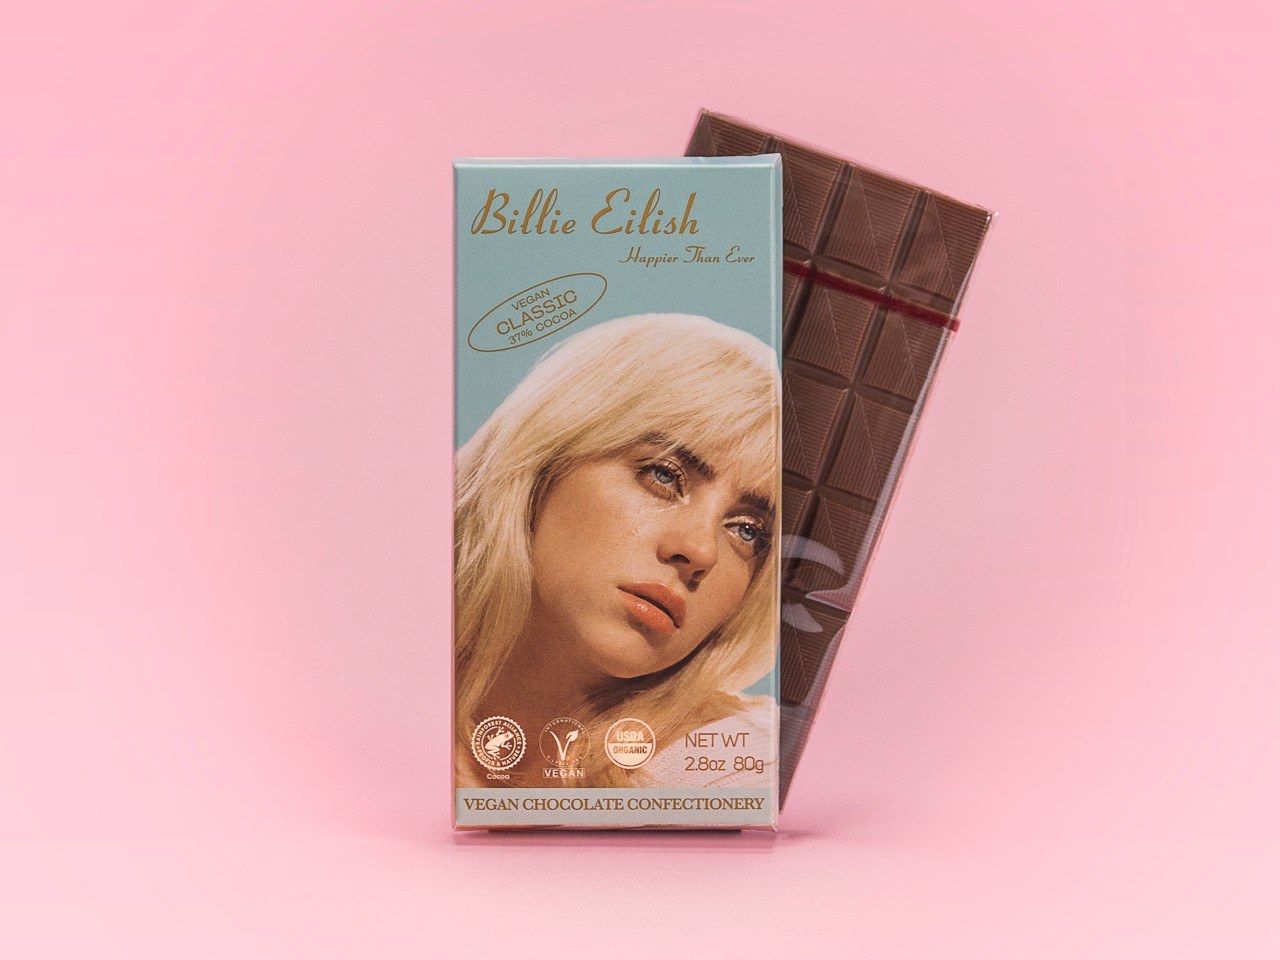 Vegane iChoc Schokolade als Limited Edition für Billie Eilish – produziert von der EcoFinia GmbH in Bochum.